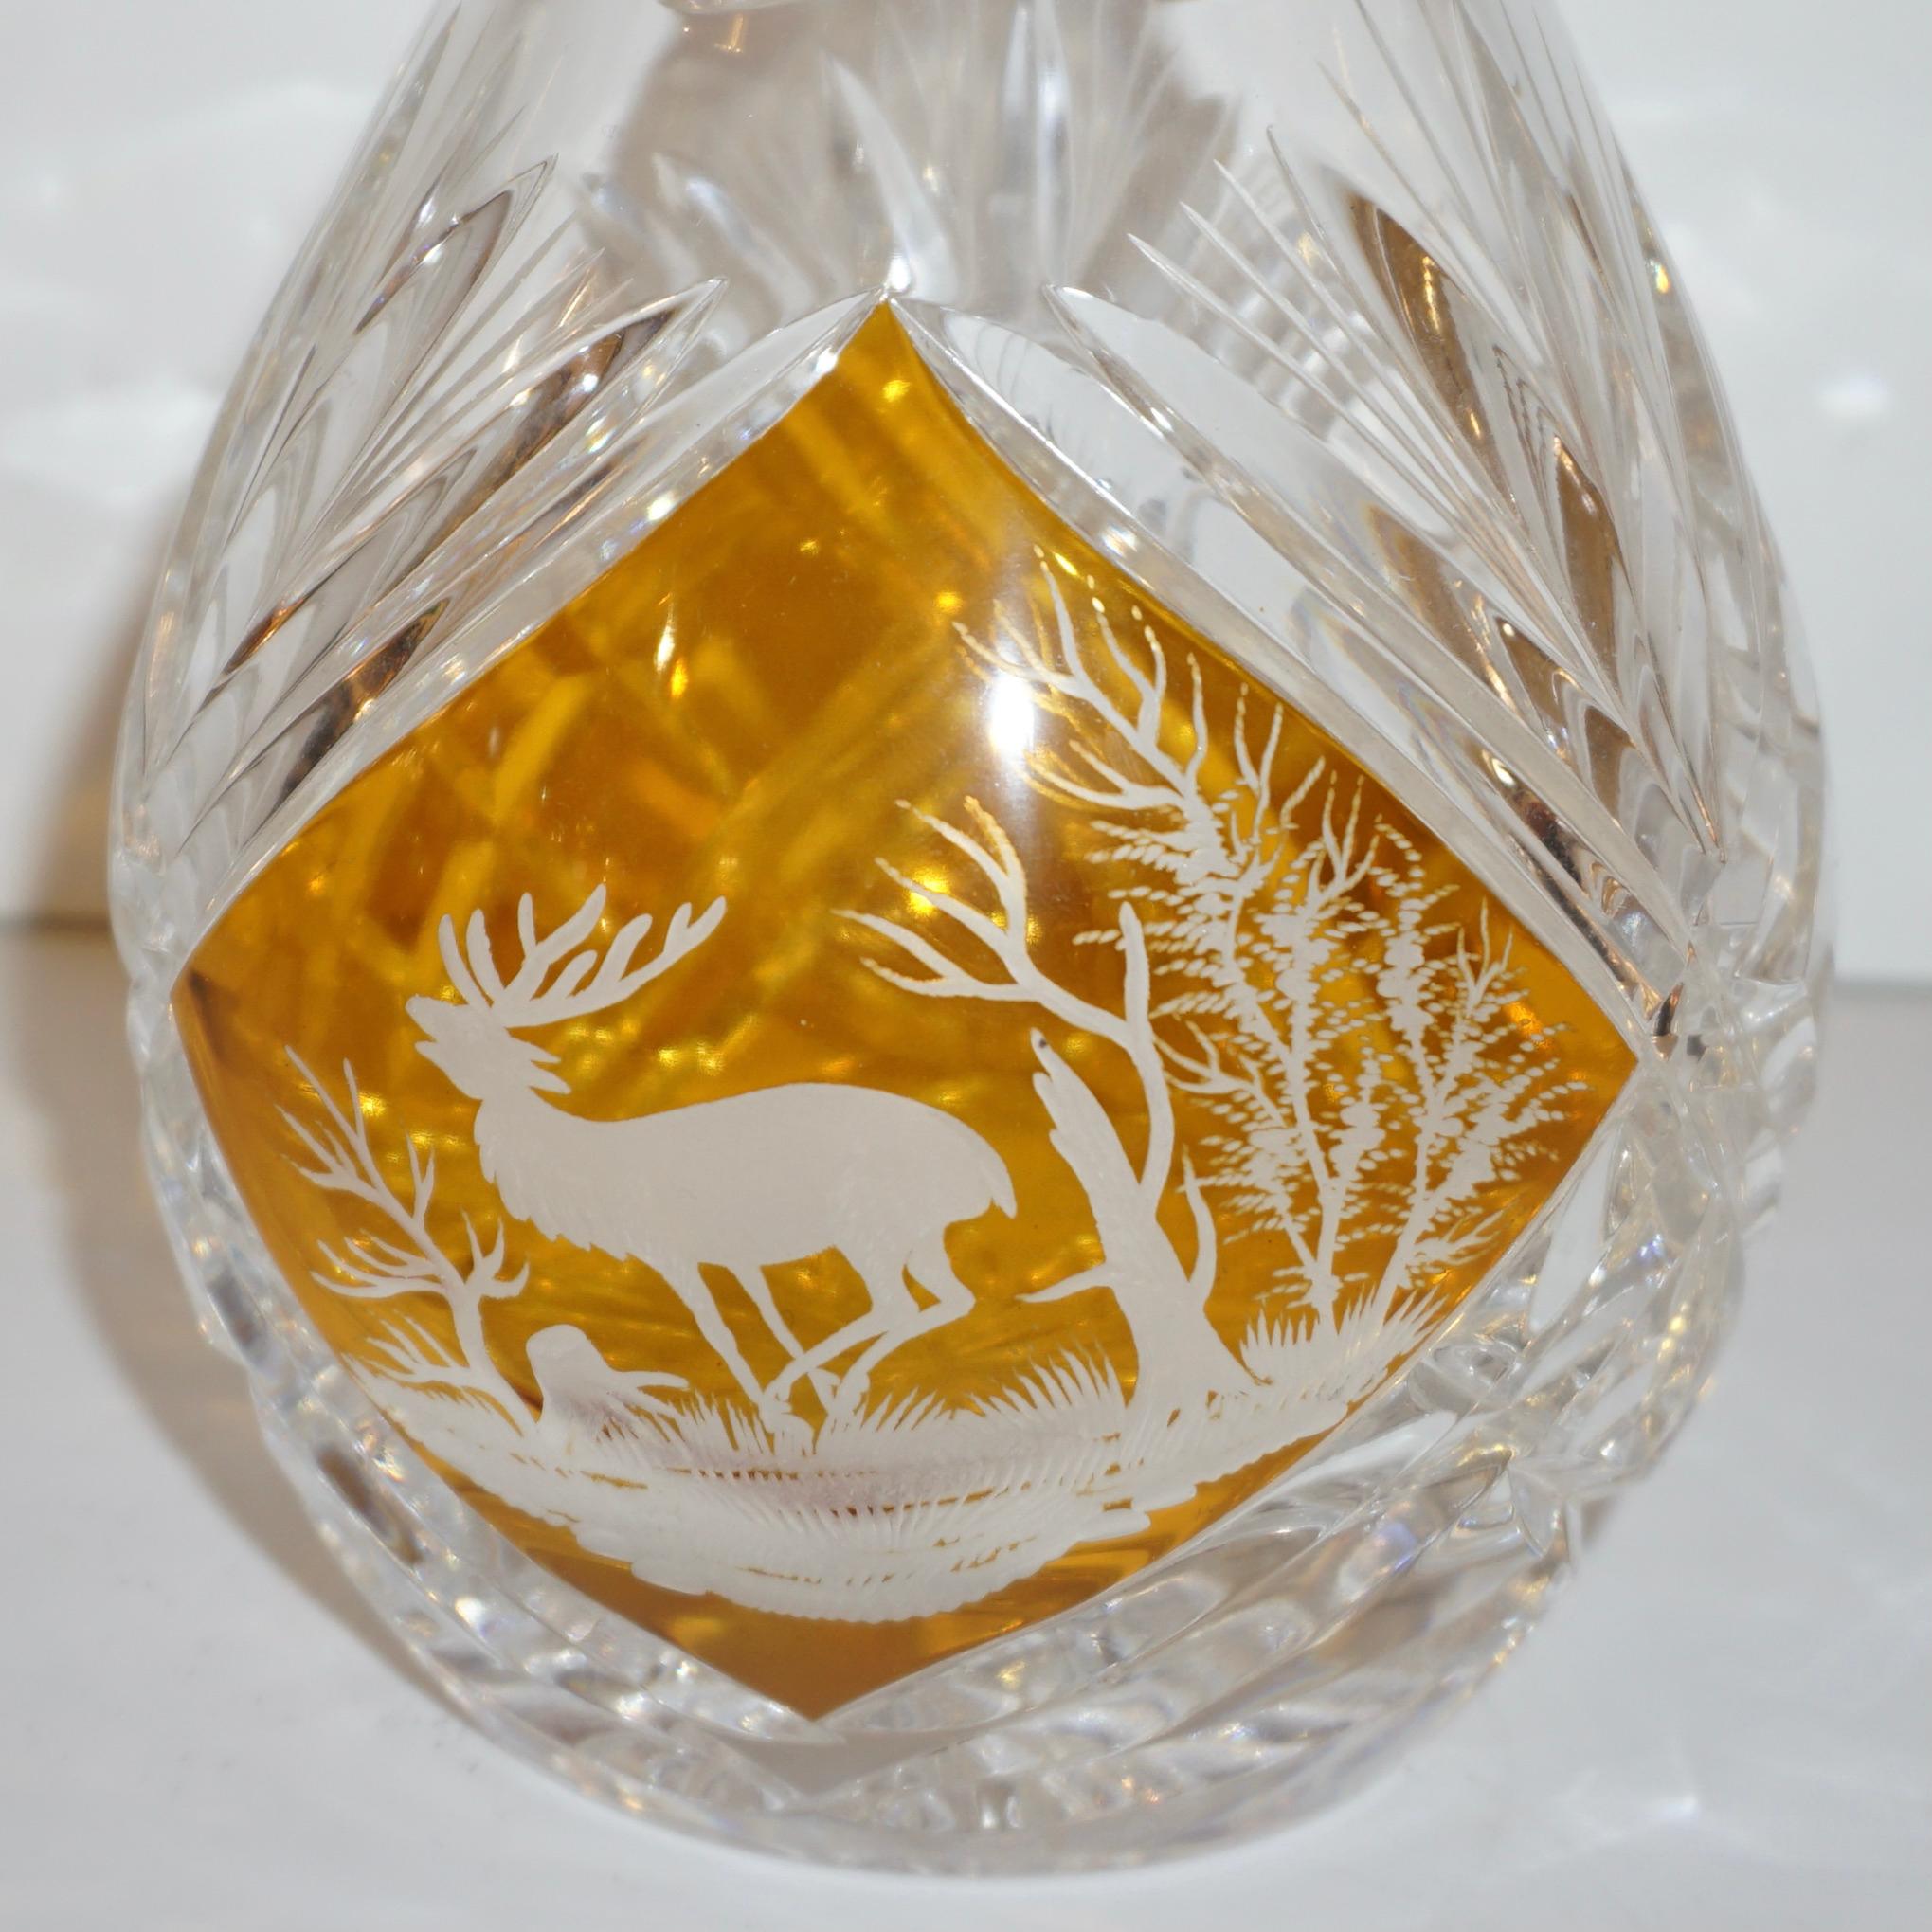 bouteille de whisky/liqueur en verre soufflé de Bohème des années 1970, avec bouchon, le tout taillé à la main avec un motif gothique décoré d'un élan gravé, diamants de très haute qualité tout autour, également sur la base. La couleur ambrée est de